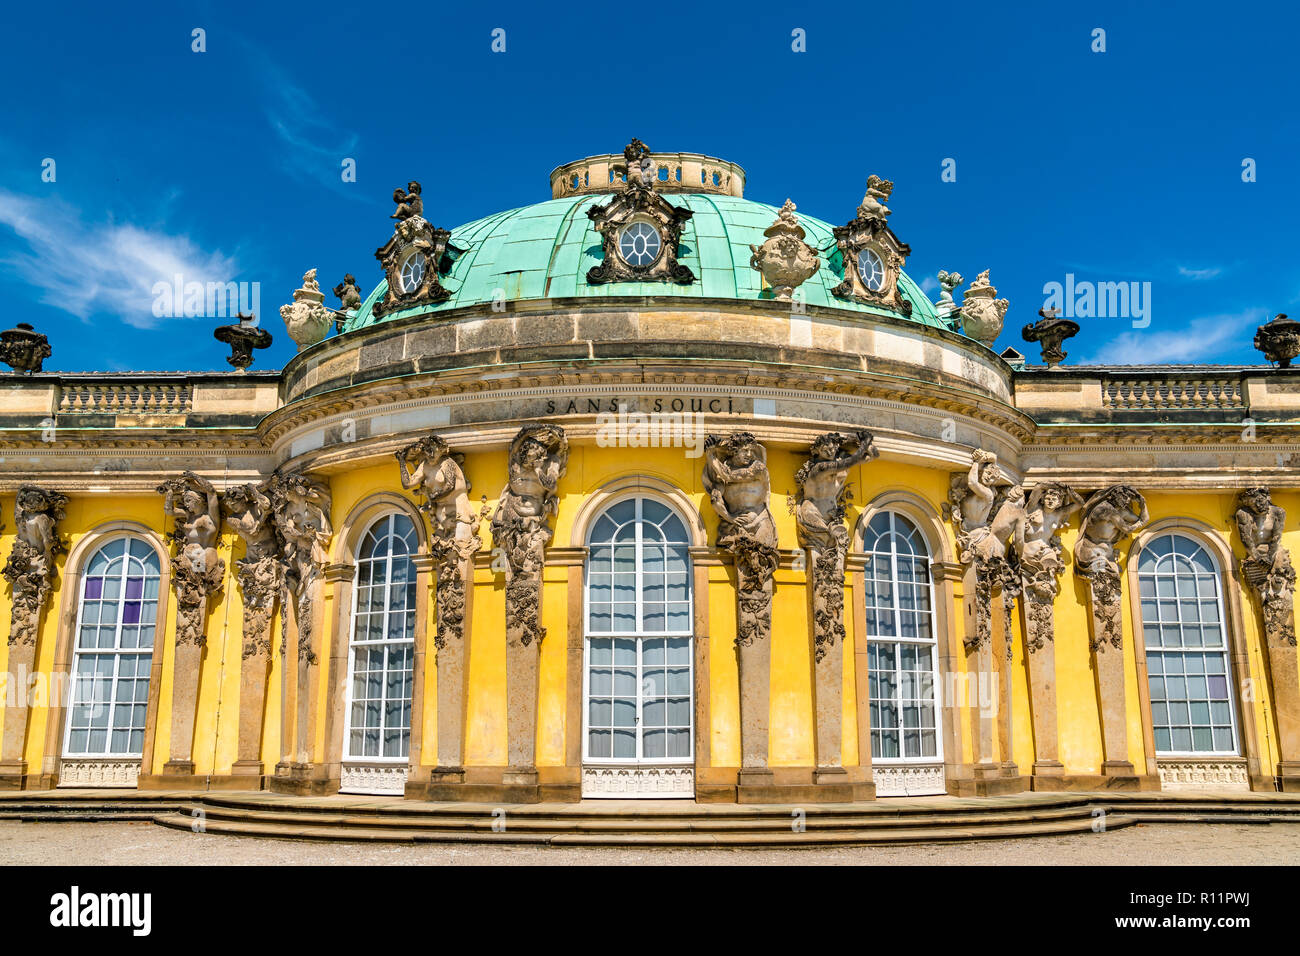 Sanssouci, le palais d'été de Frédéric le Grand, roi de Prusse, à Potsdam, Allemagne Banque D'Images